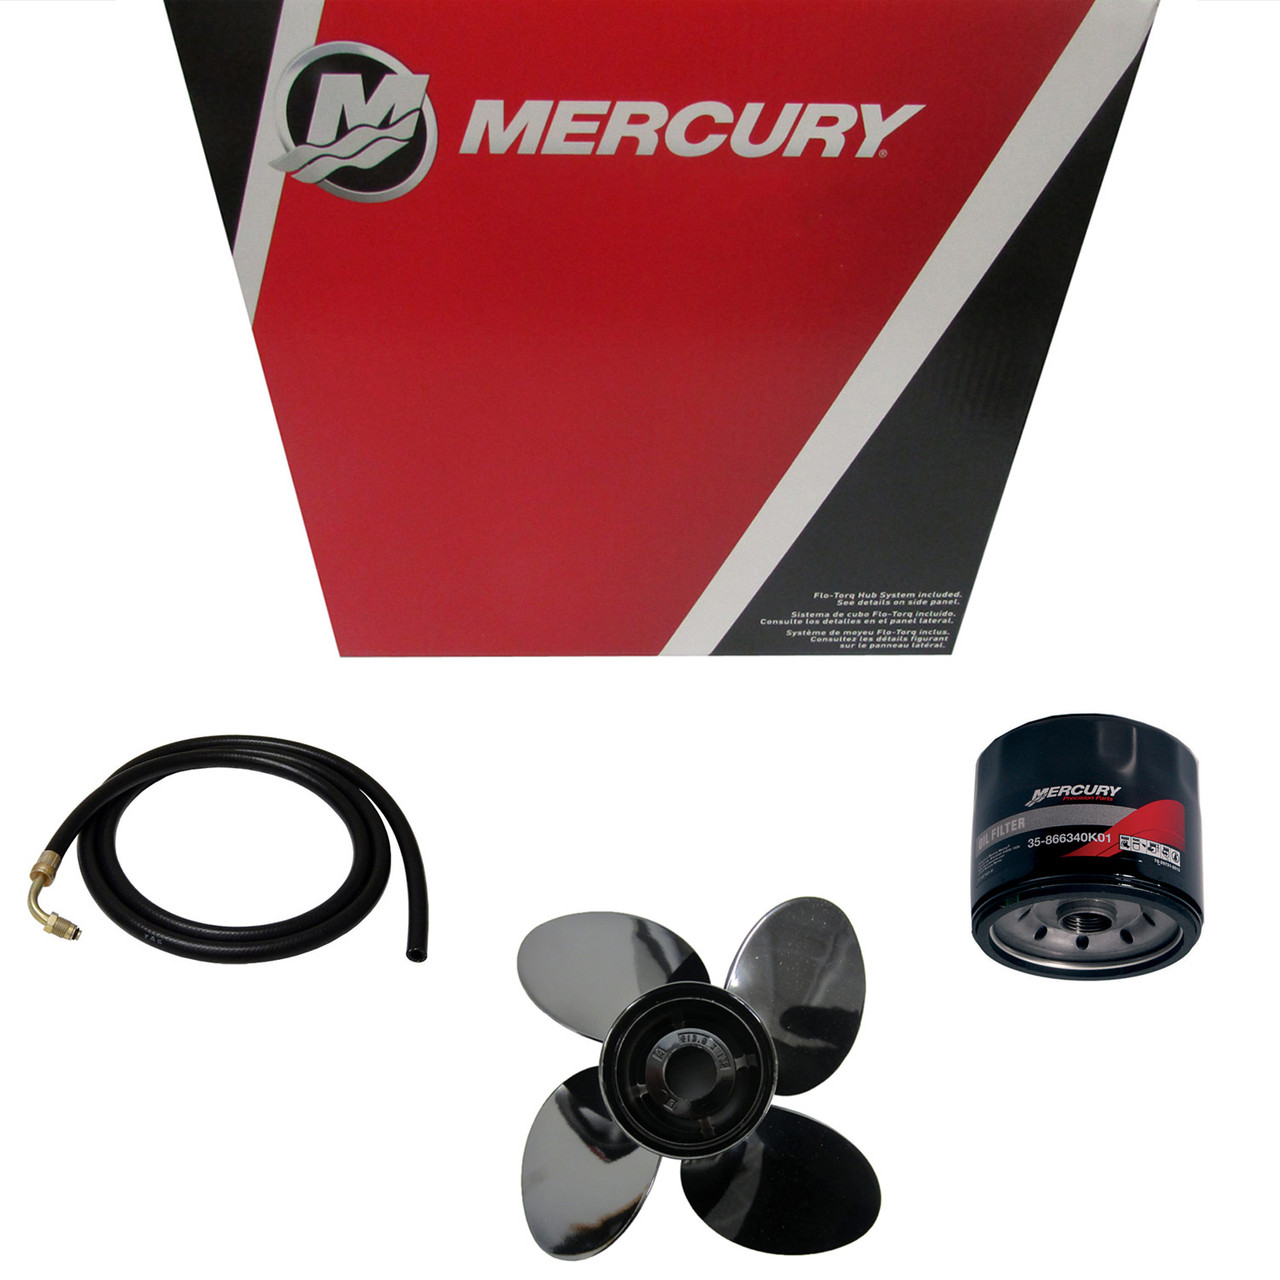 Mercury Marine / Mercruiser New OEM Sea Pump Kit, 46-8M0139994